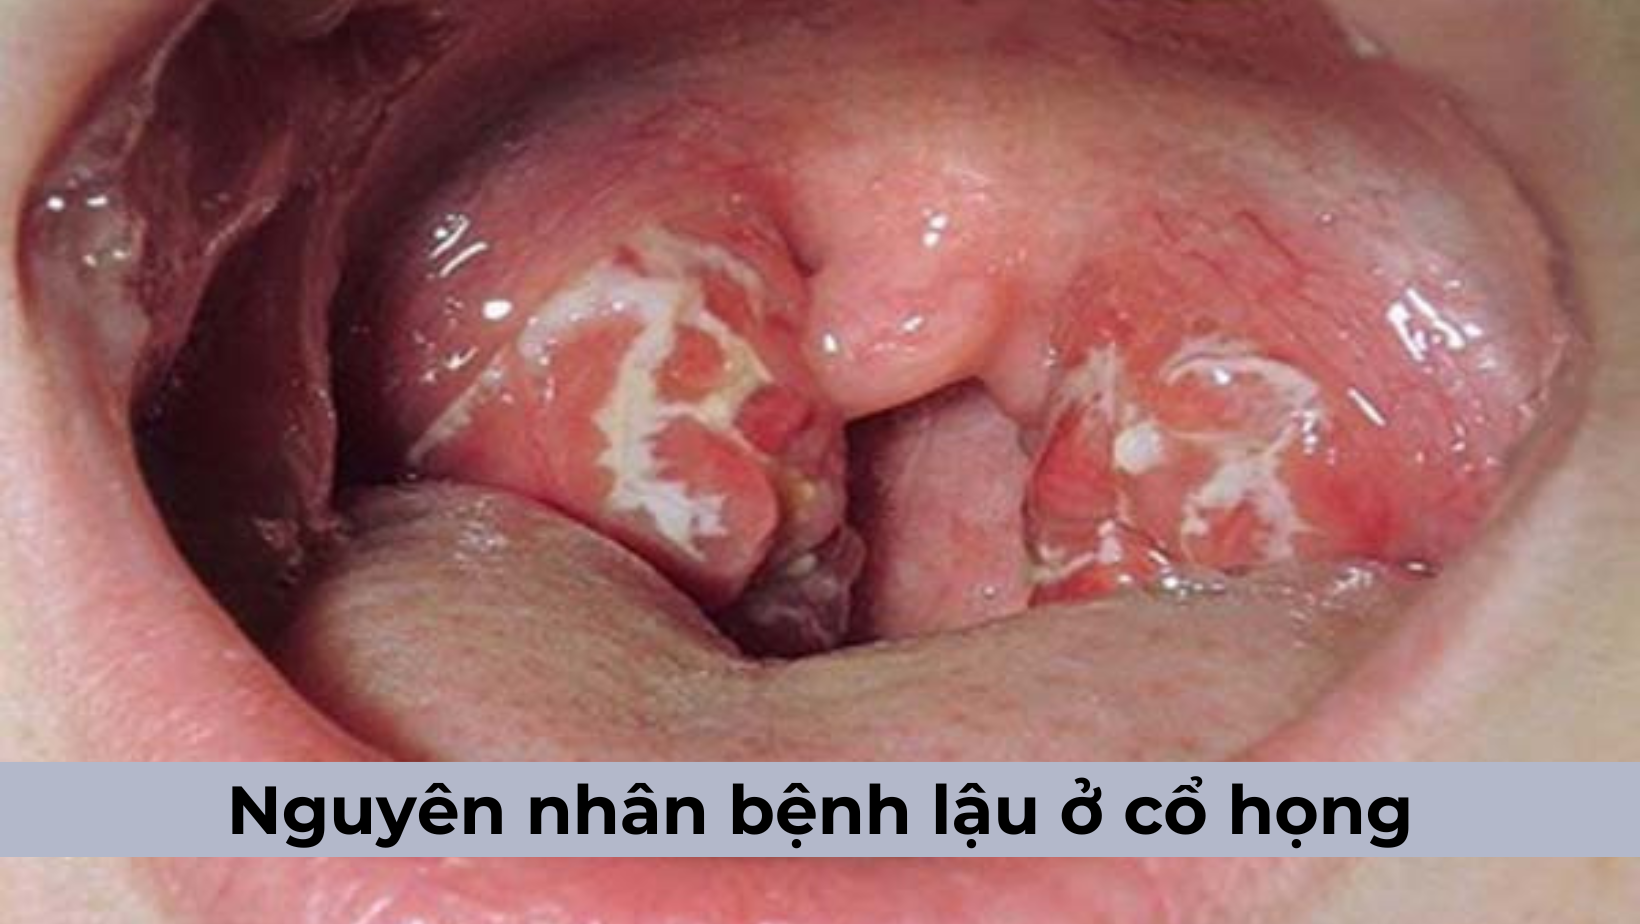 Nguyên nhân bệnh lậu ở cổ họng